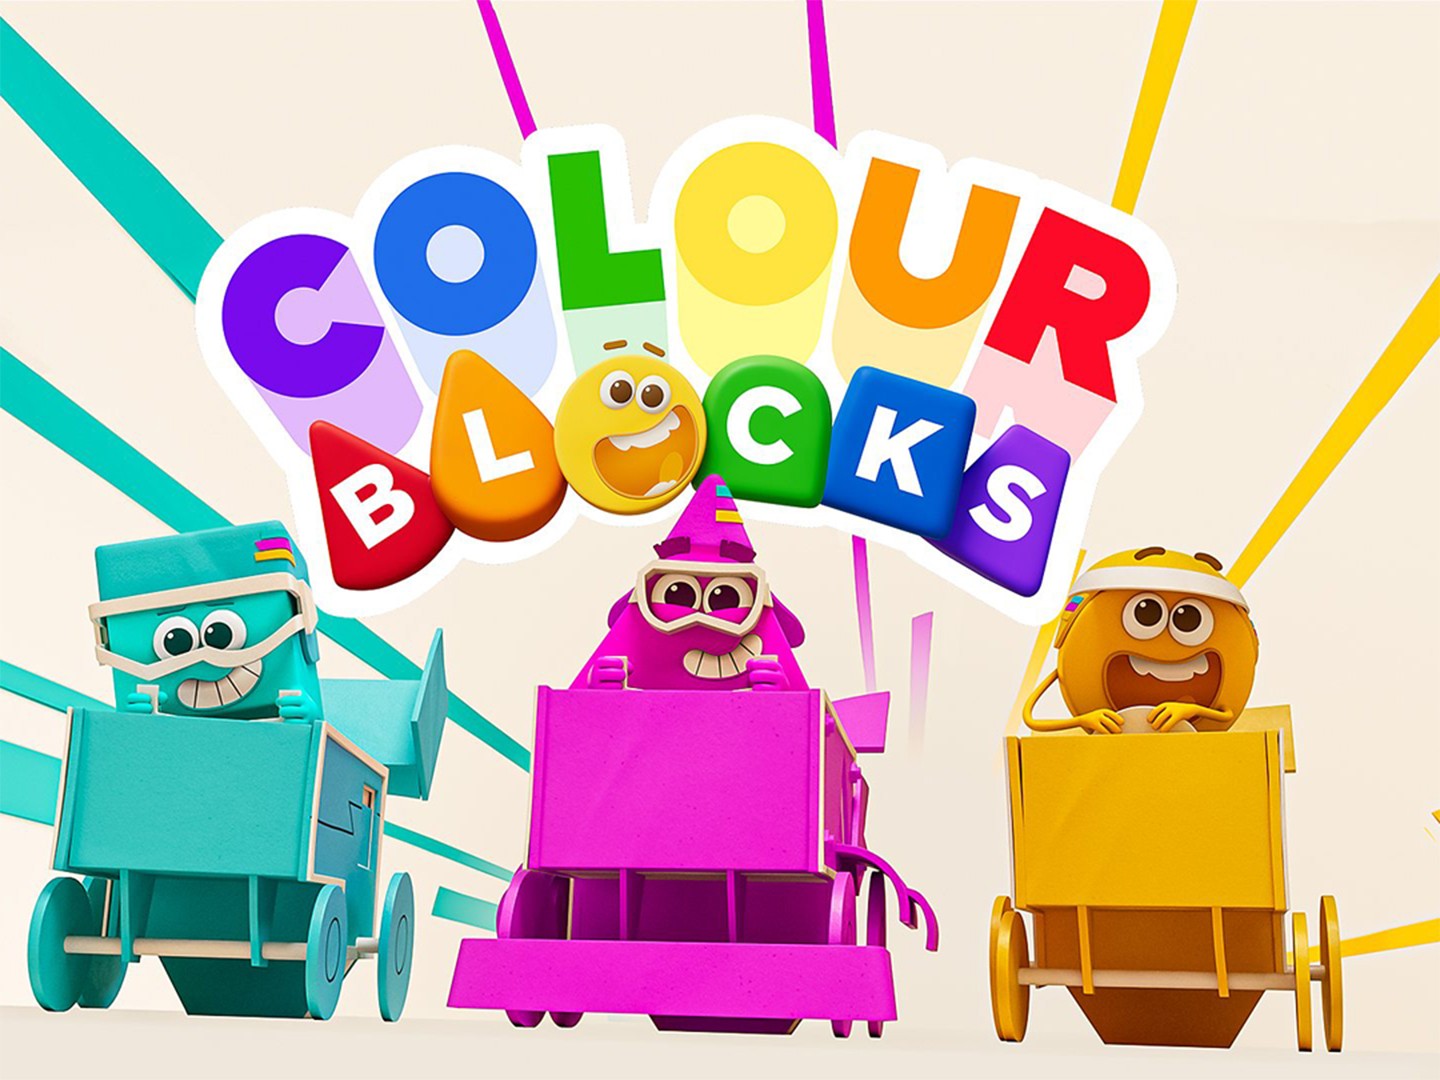 Colourblocks Series 1, Numberblocks Wiki